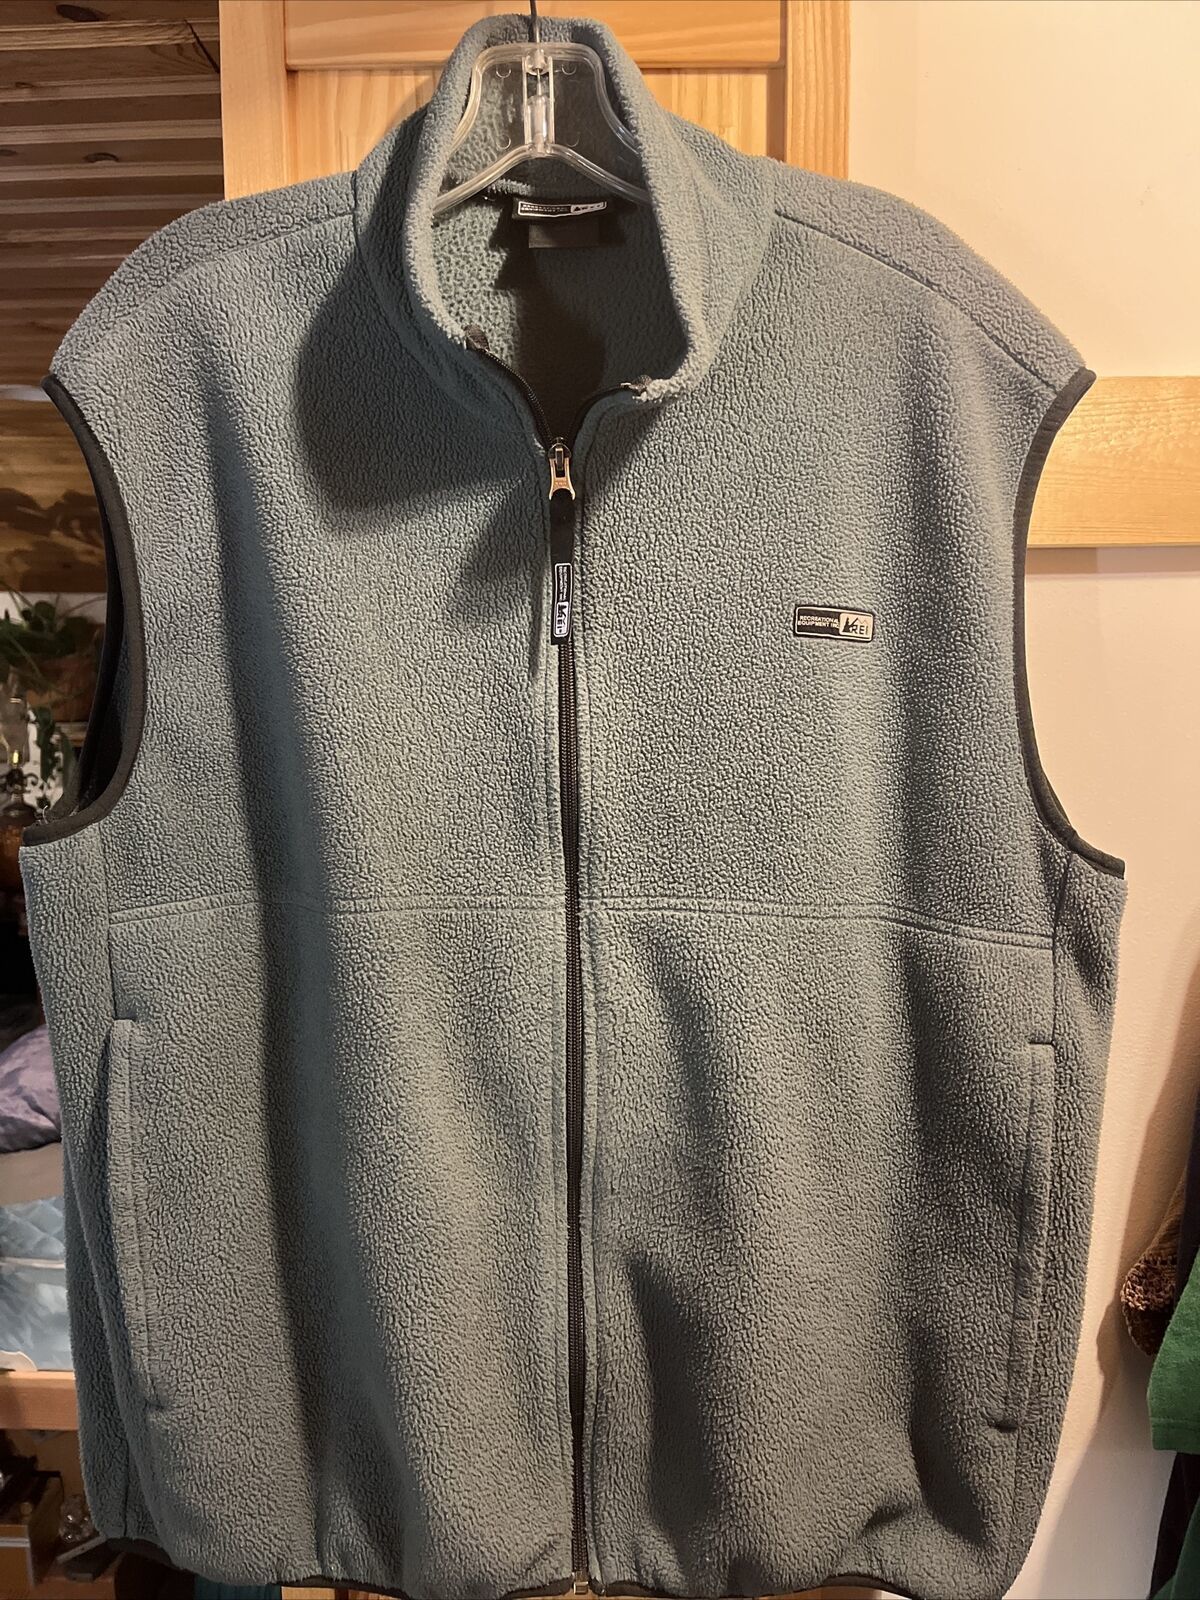 Primary image for REI Men’s XL Forest Green Polartec Full Zip Polyester Sleeveless Vest